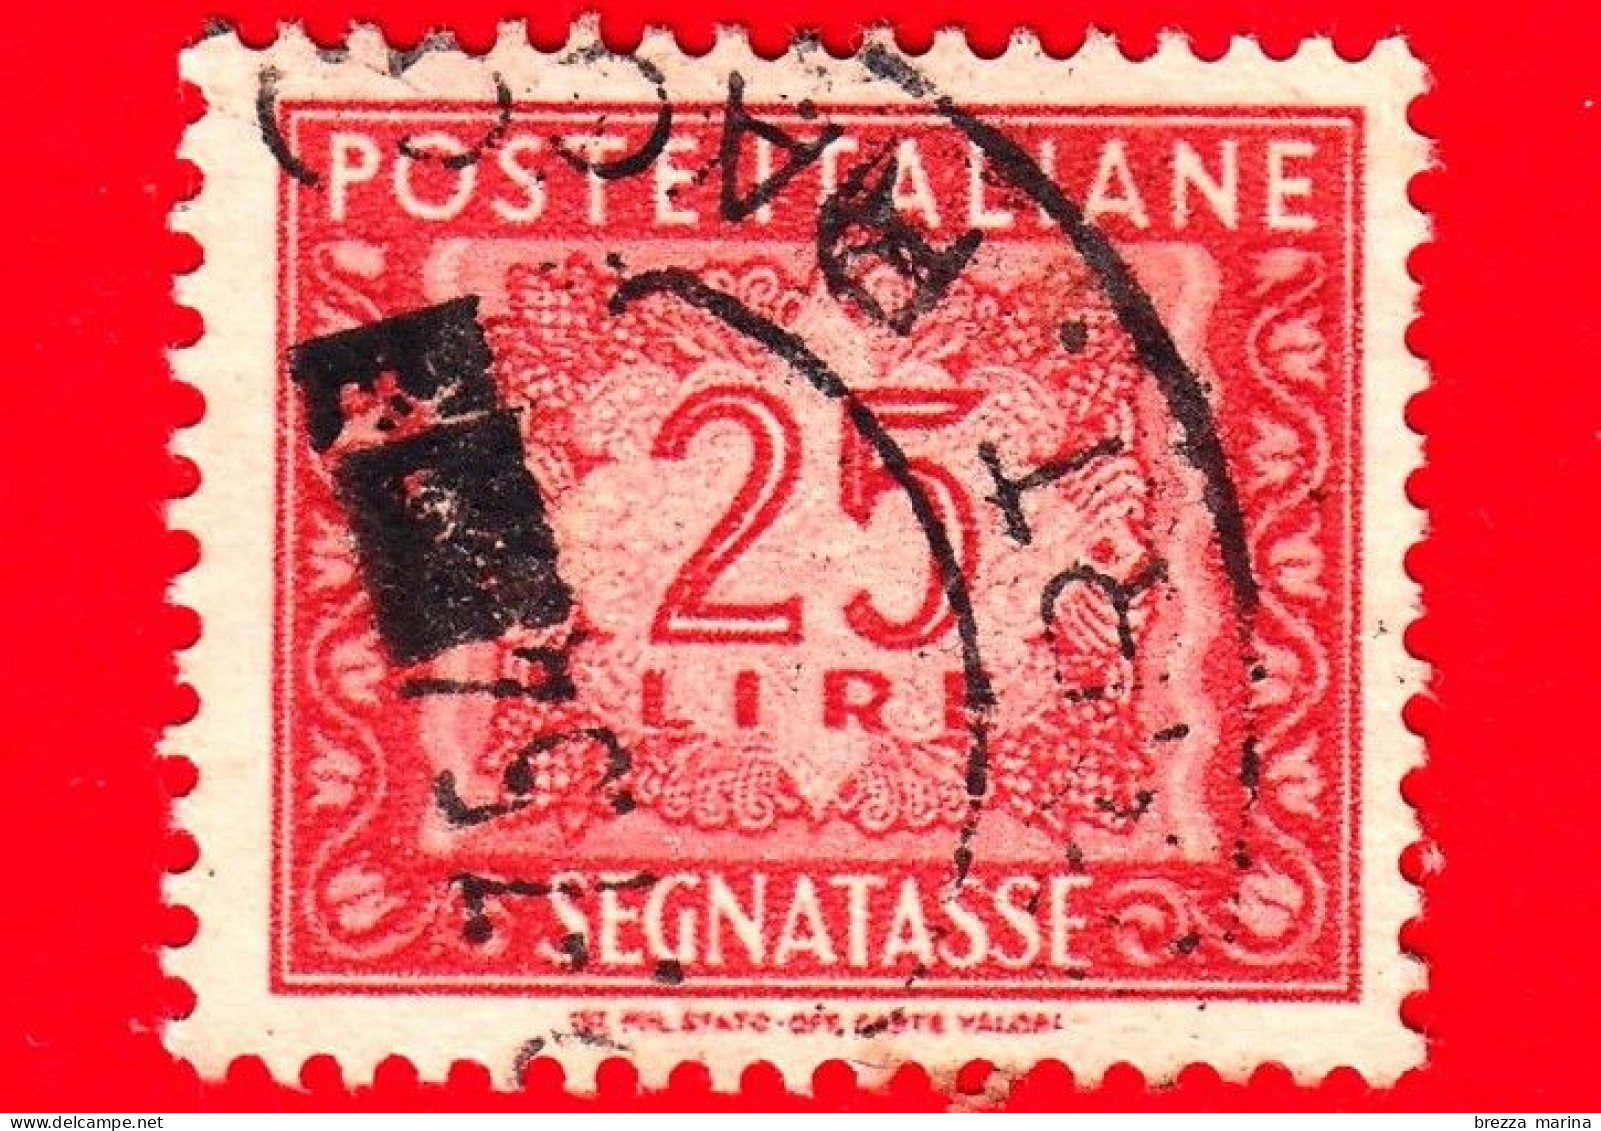 ITALIA - Usato - 1947 - Segnatasse - Cifra E Decorazioni, Filigrana Ruota - 25 L. - Impuestos